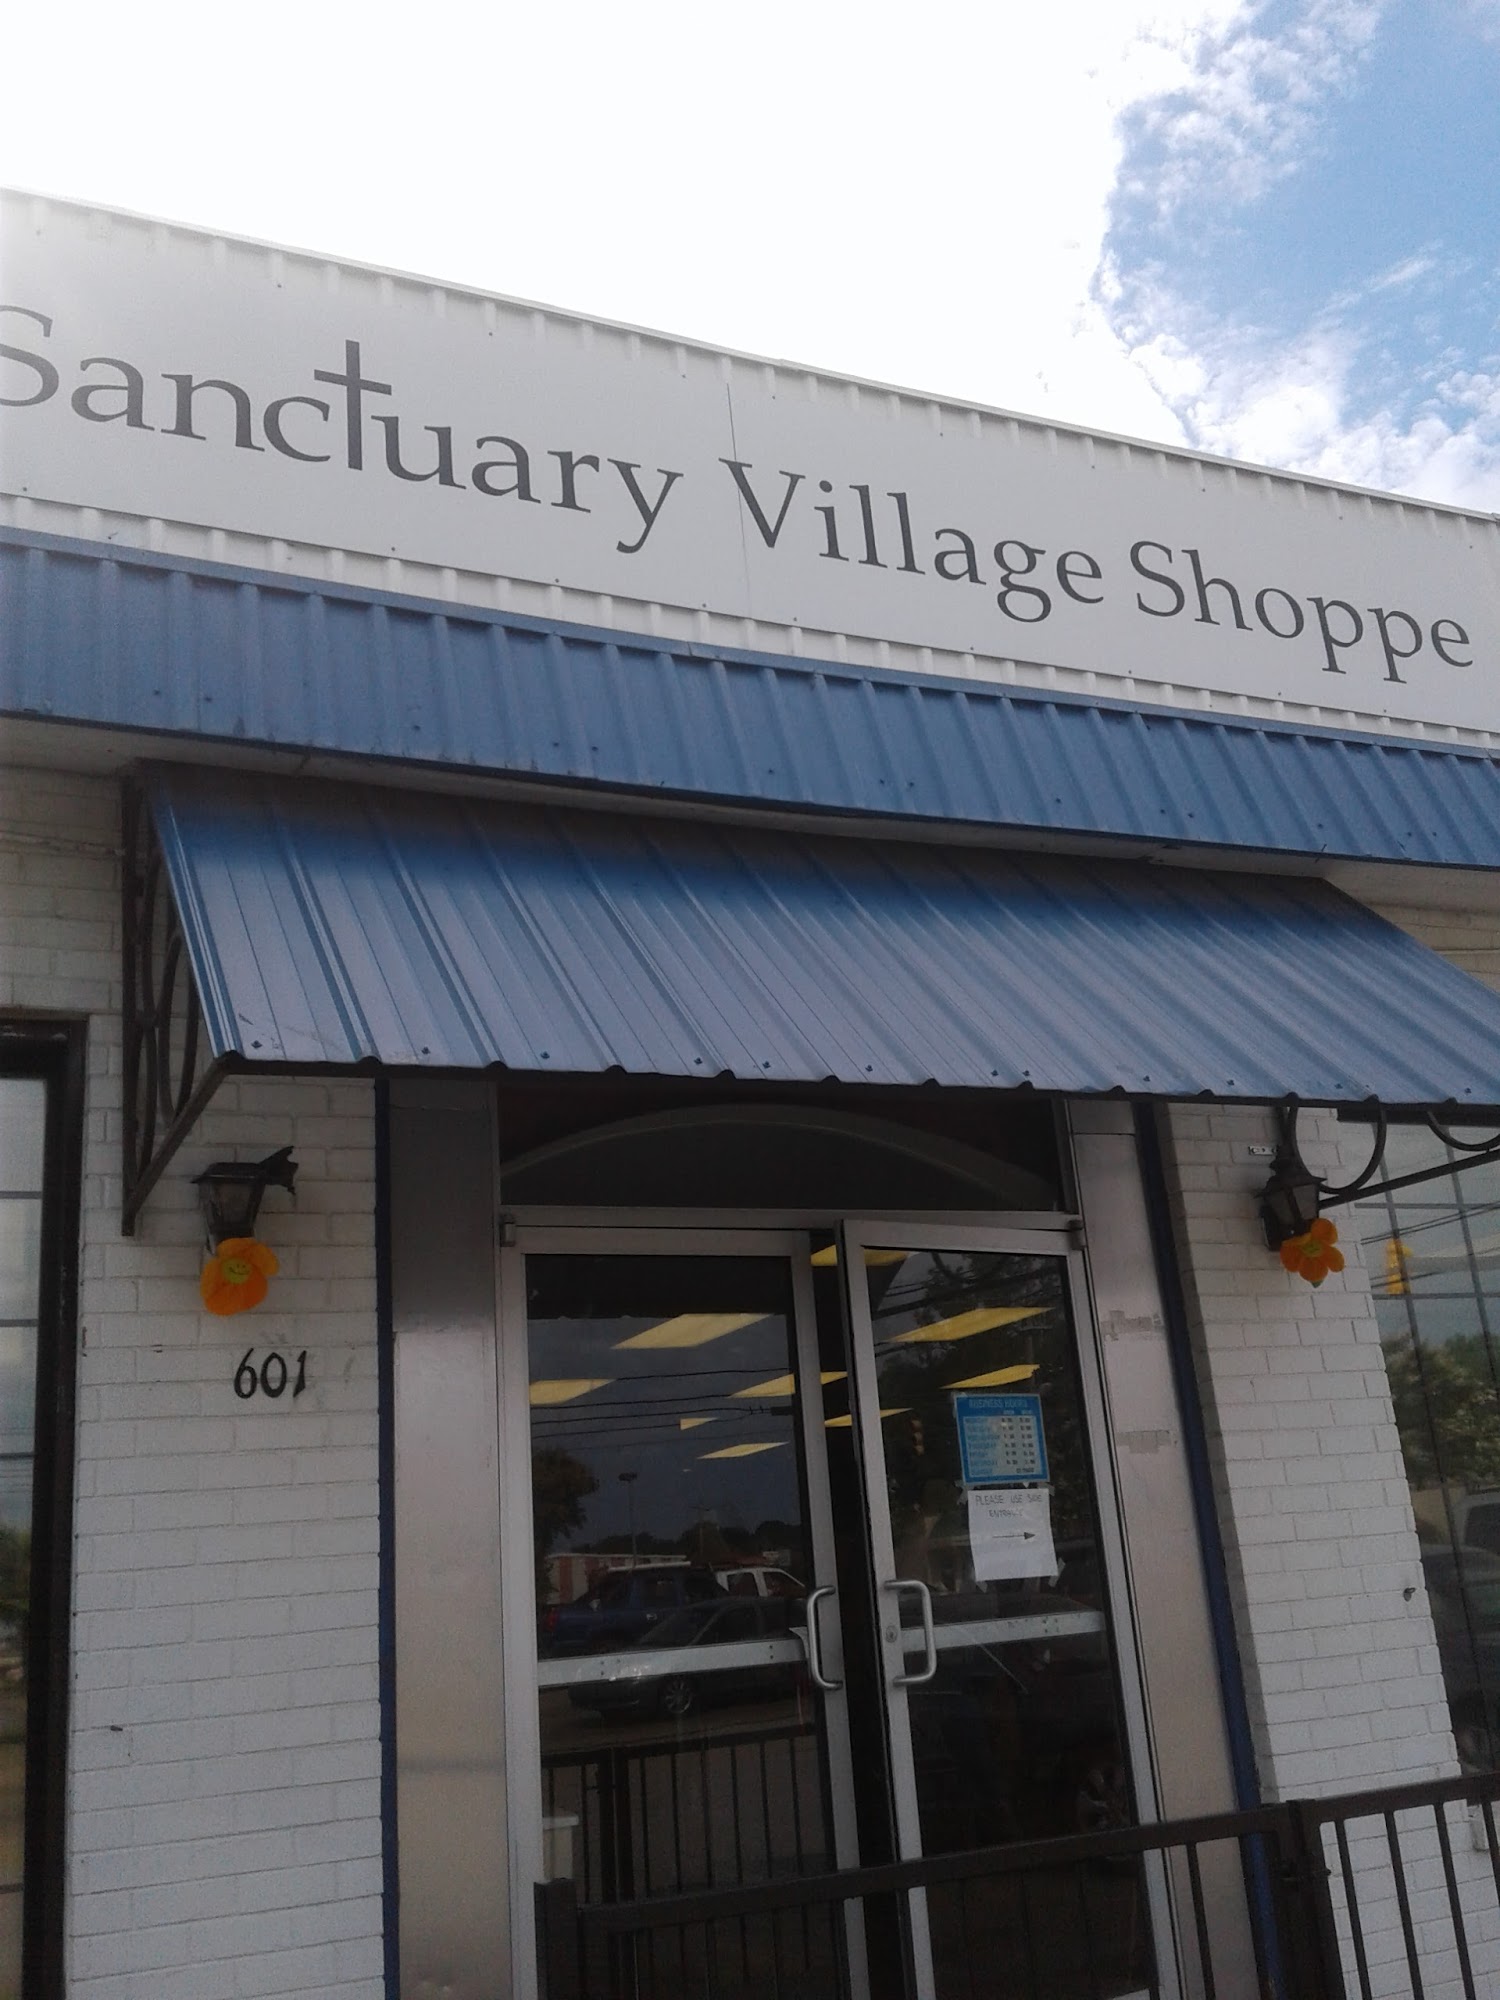 Sanctuary Village Shoppe